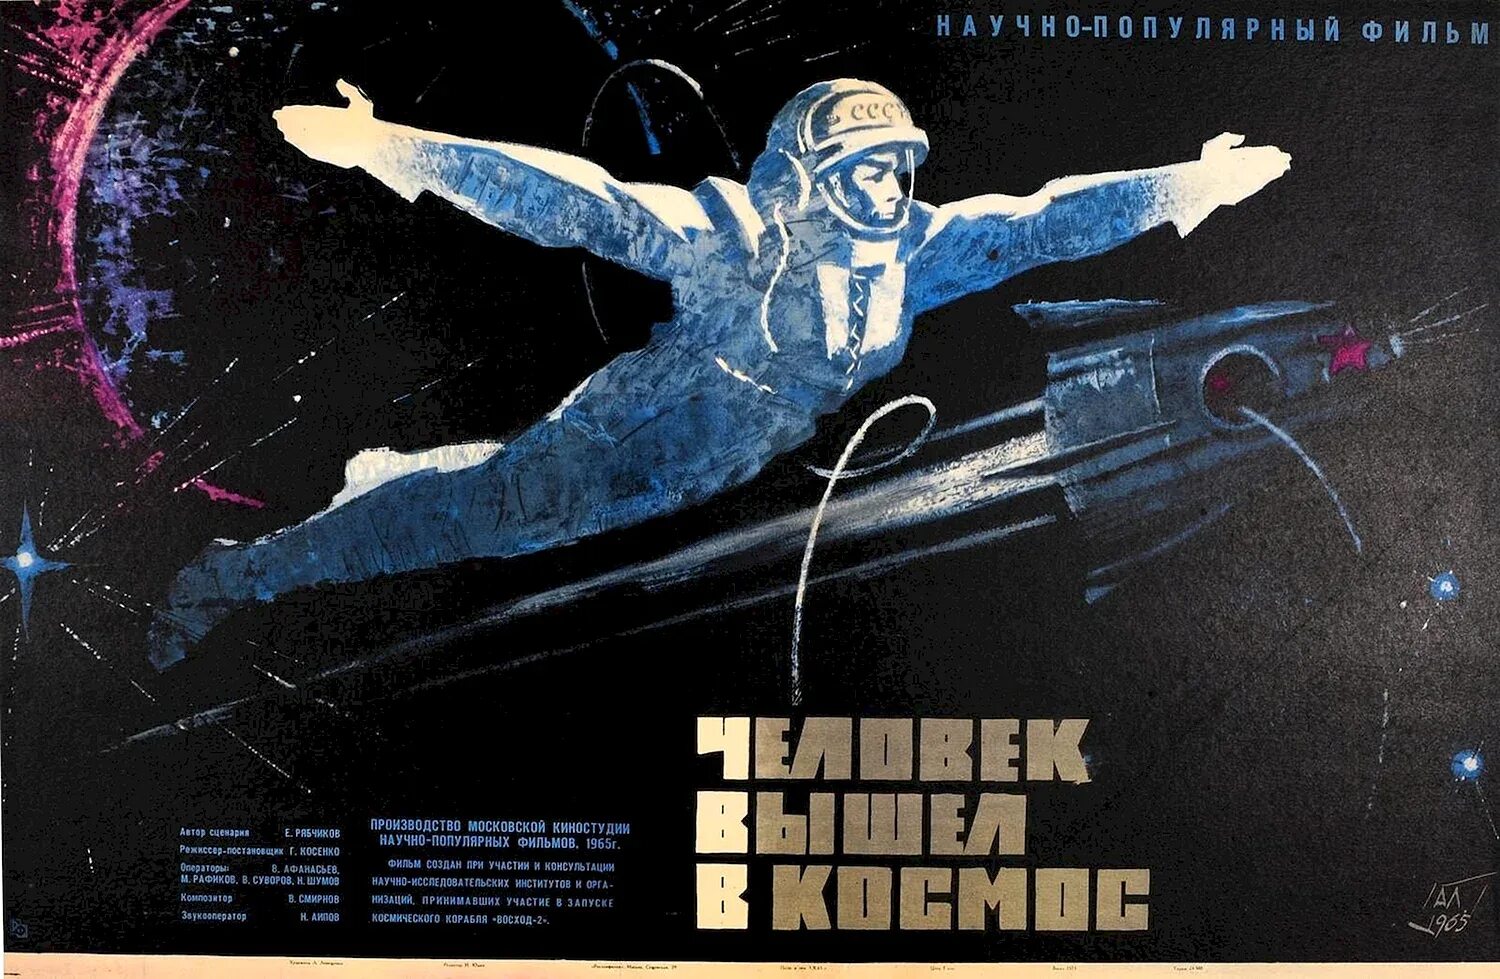 Космос лозунг. Плакат. Космос. Плакат космонавтики. Советские космические плакатки. Советские плакаты на тему космоса.